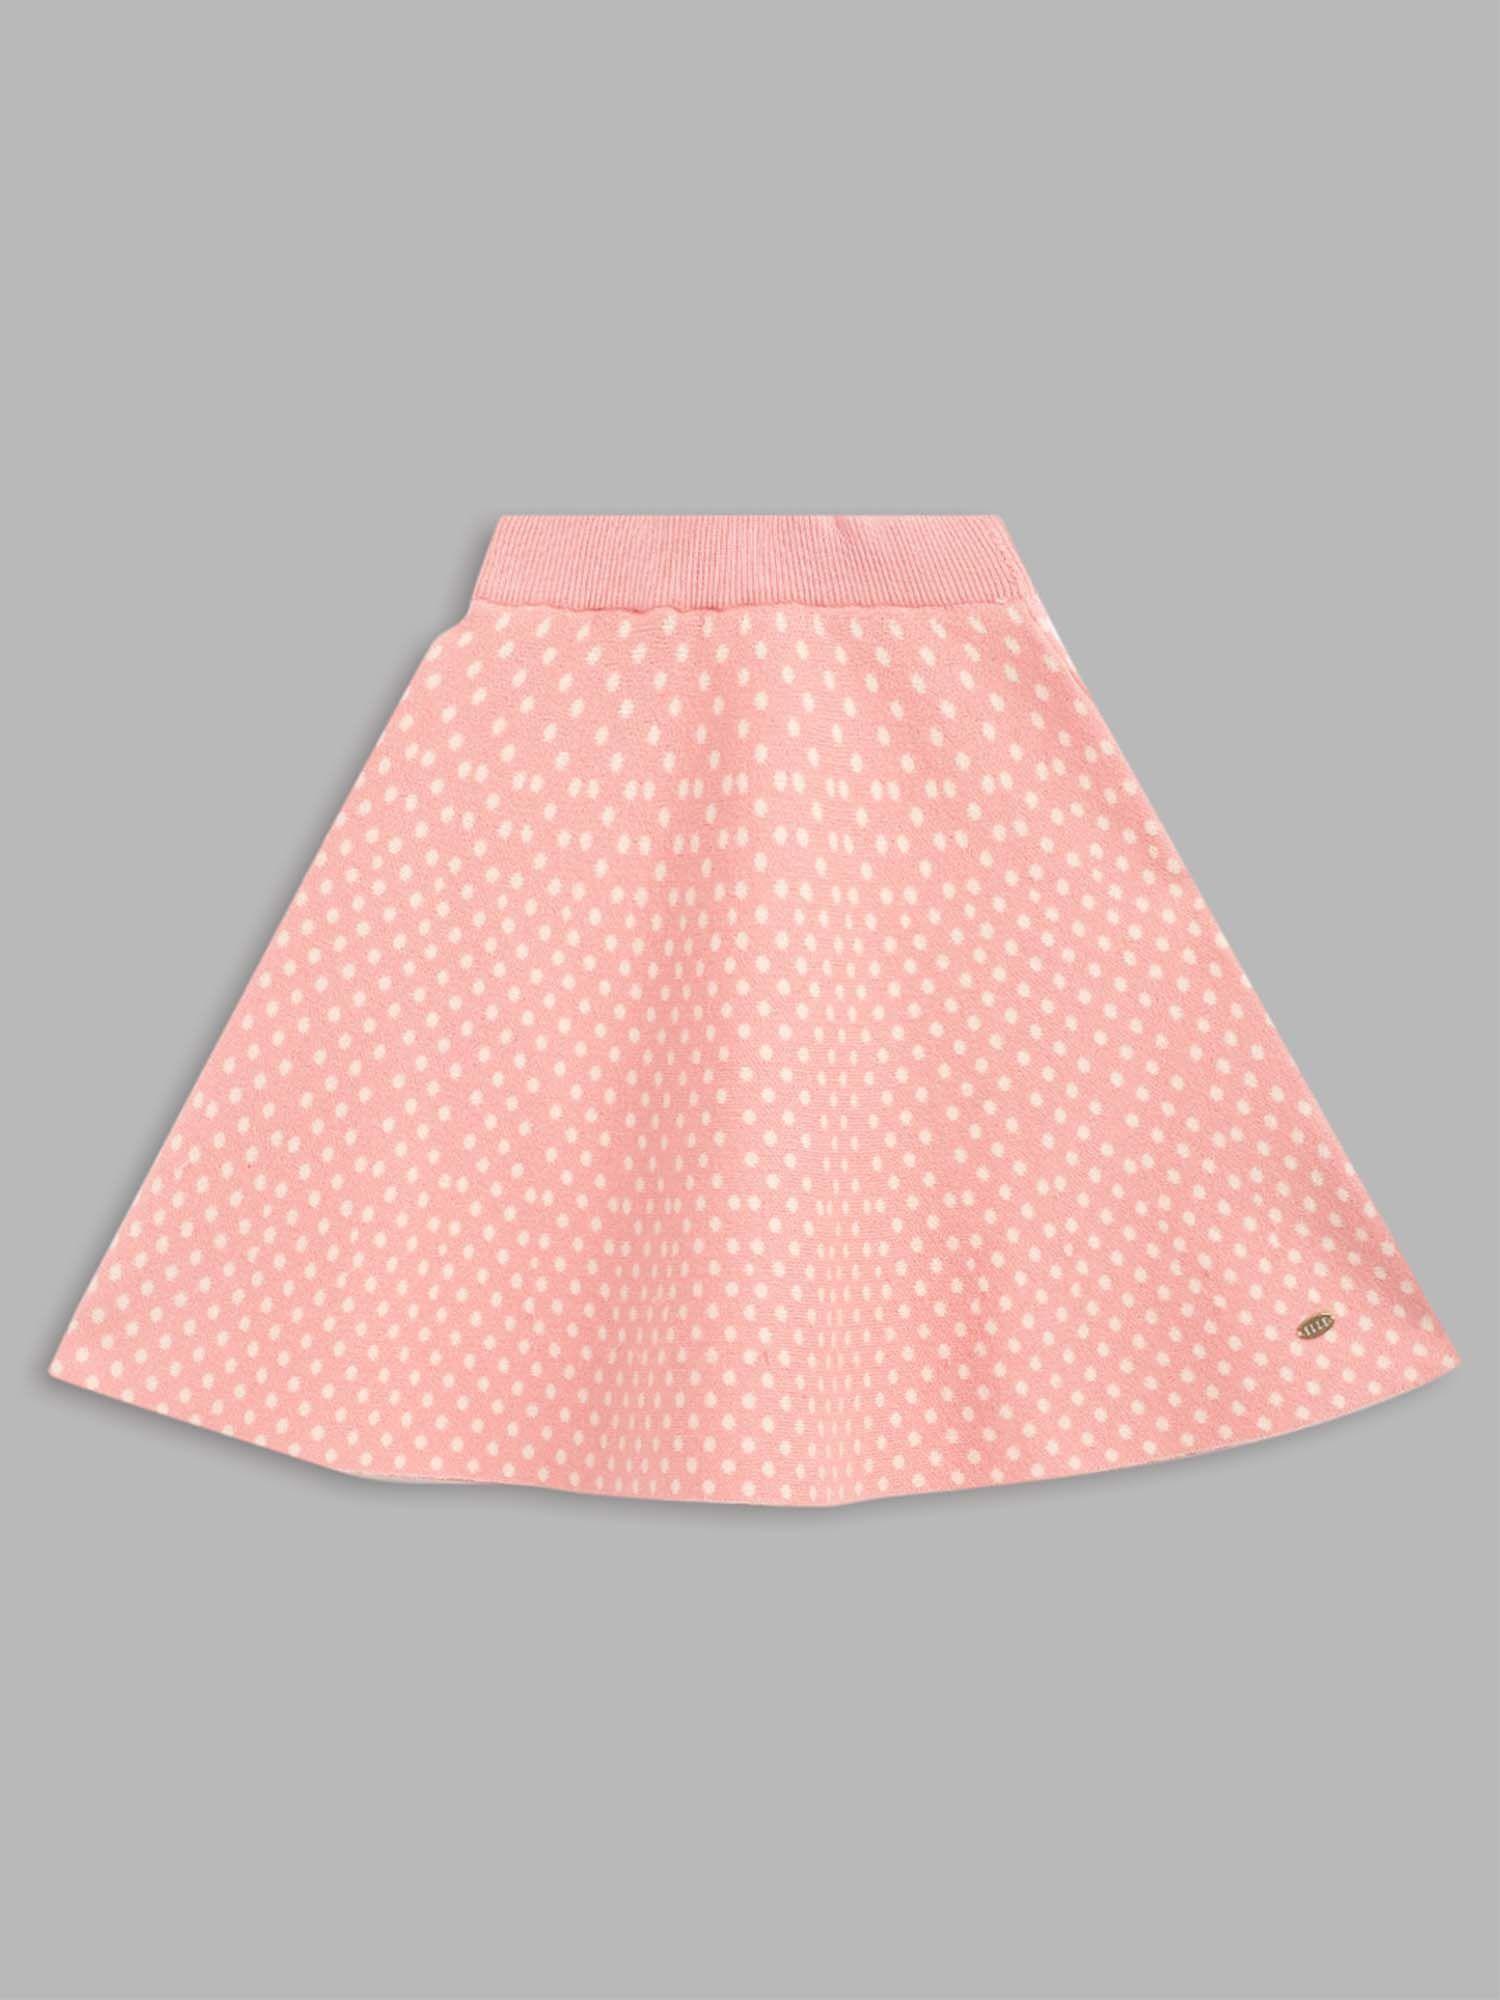 Pink Girls Skirt